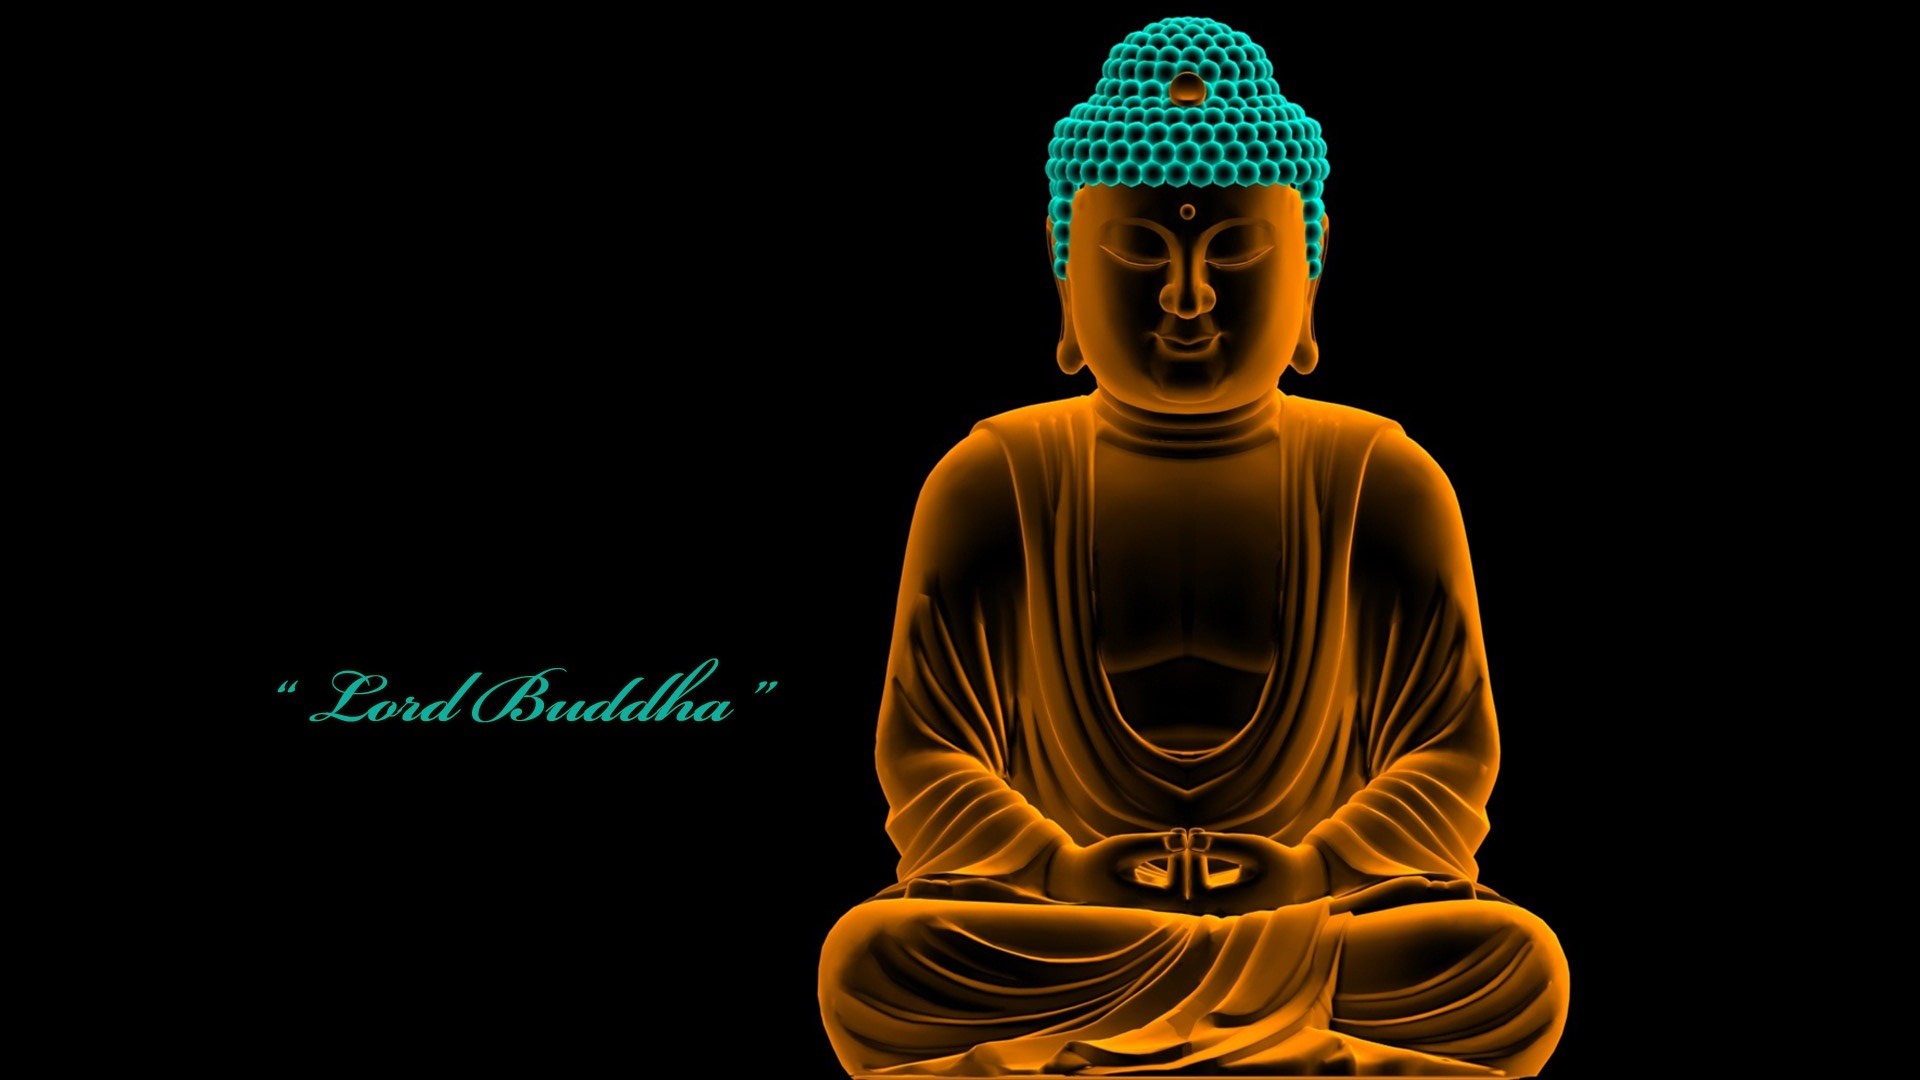 Lord Buddha Live 3d Wallpaper New HD